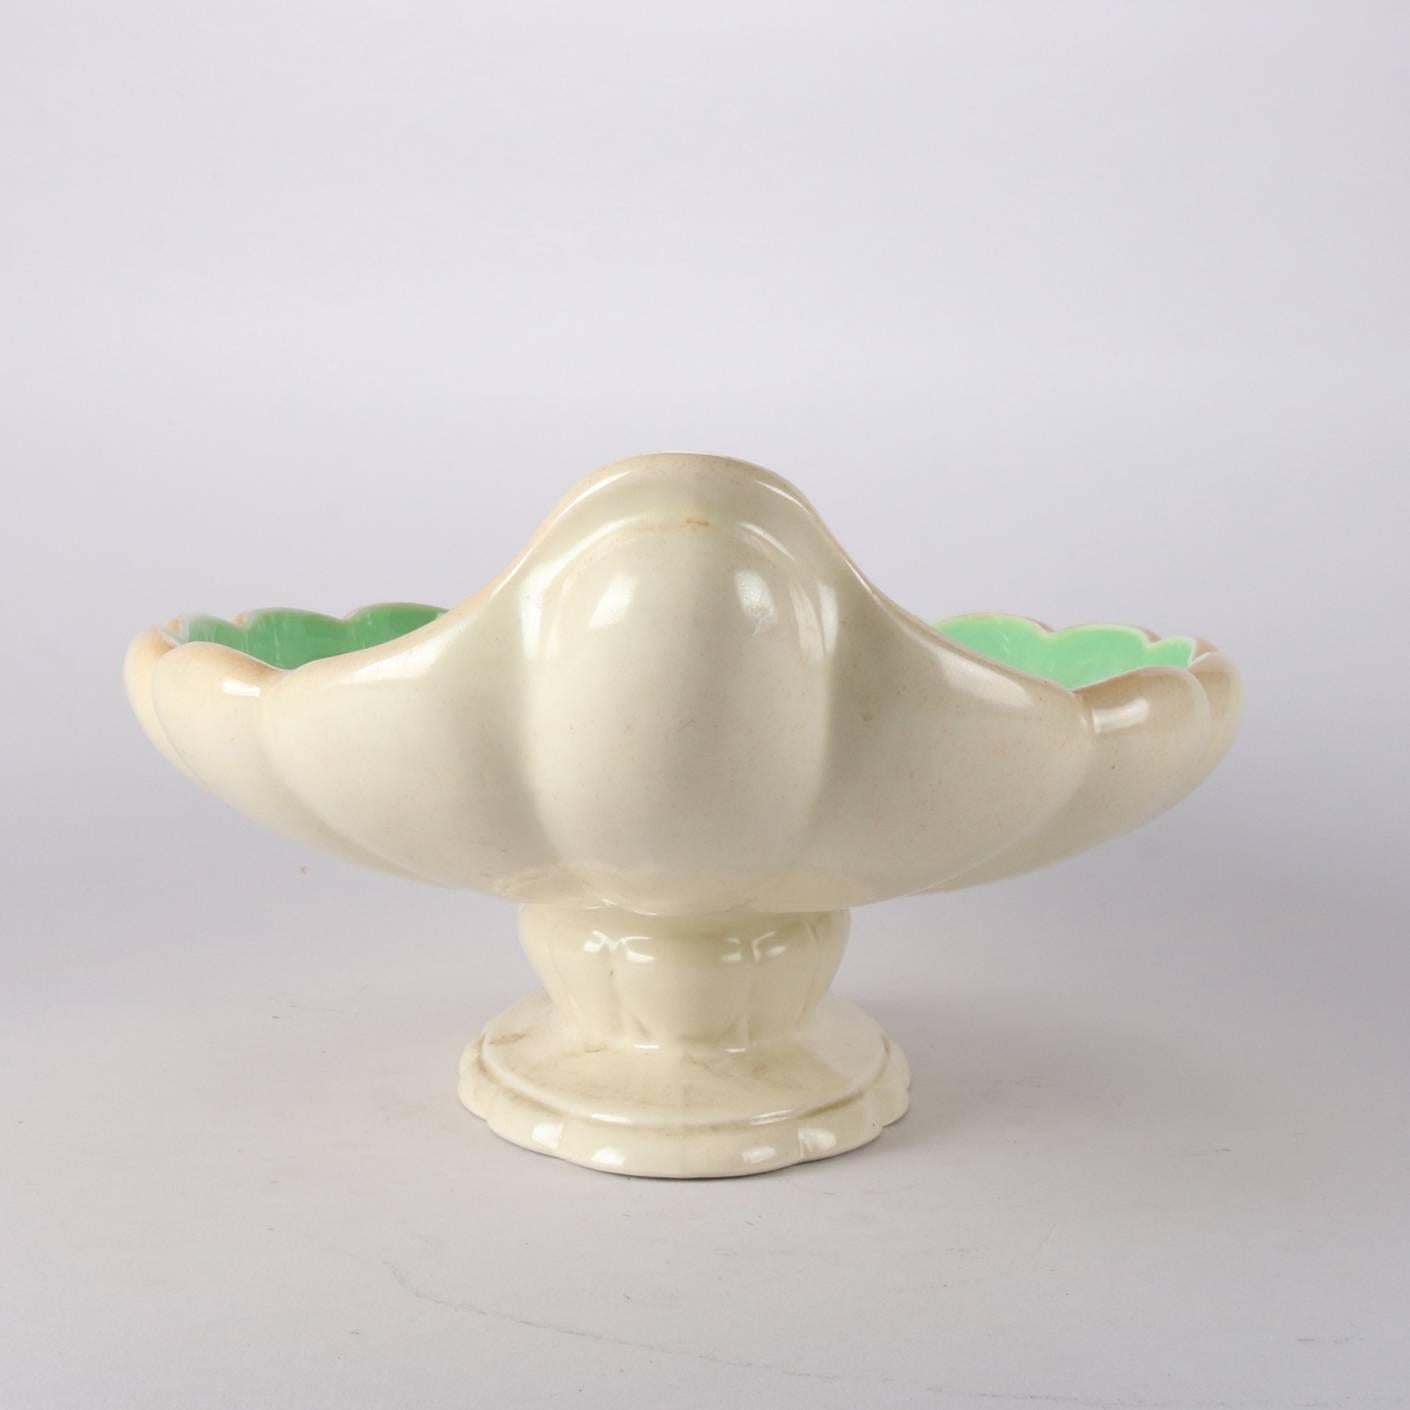 American Antique Art Nouveau Cowan Art Pottery Scallop Form Pedestal Center Console Bowl